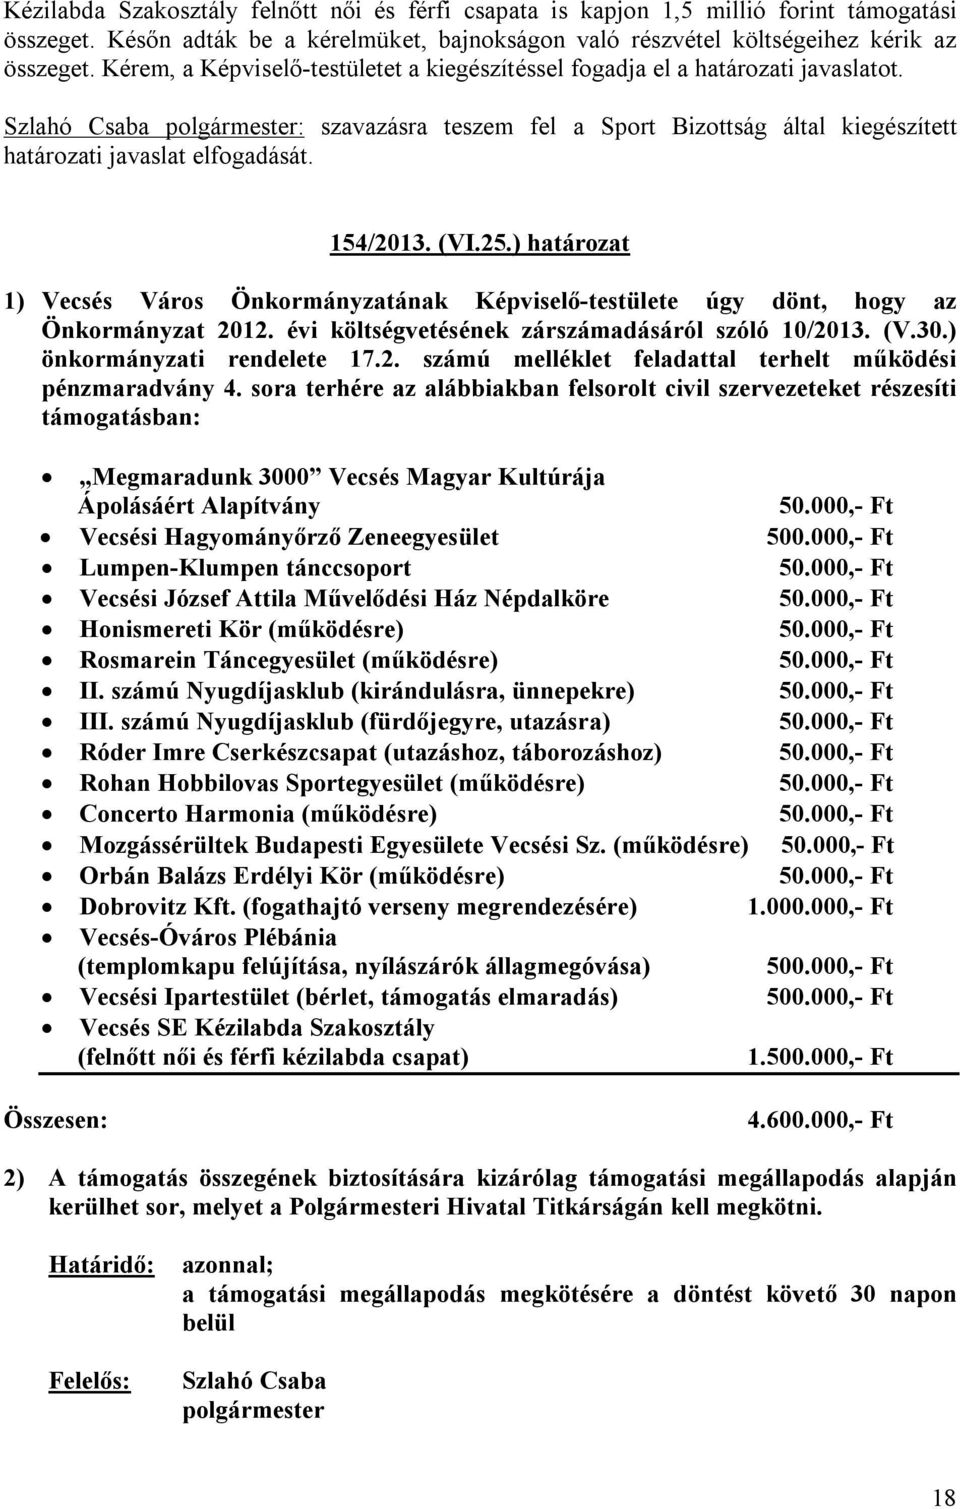 ) határozat 1) Vecsés Város Önkormányzatának Képviselő-testülete úgy dönt, hogy az Önkormányzat 2012. évi költségvetésének zárszámadásáról szóló 10/2013. (V.30.) önkormányzati rendelete 17.2. számú melléklet feladattal terhelt működési pénzmaradvány 4.